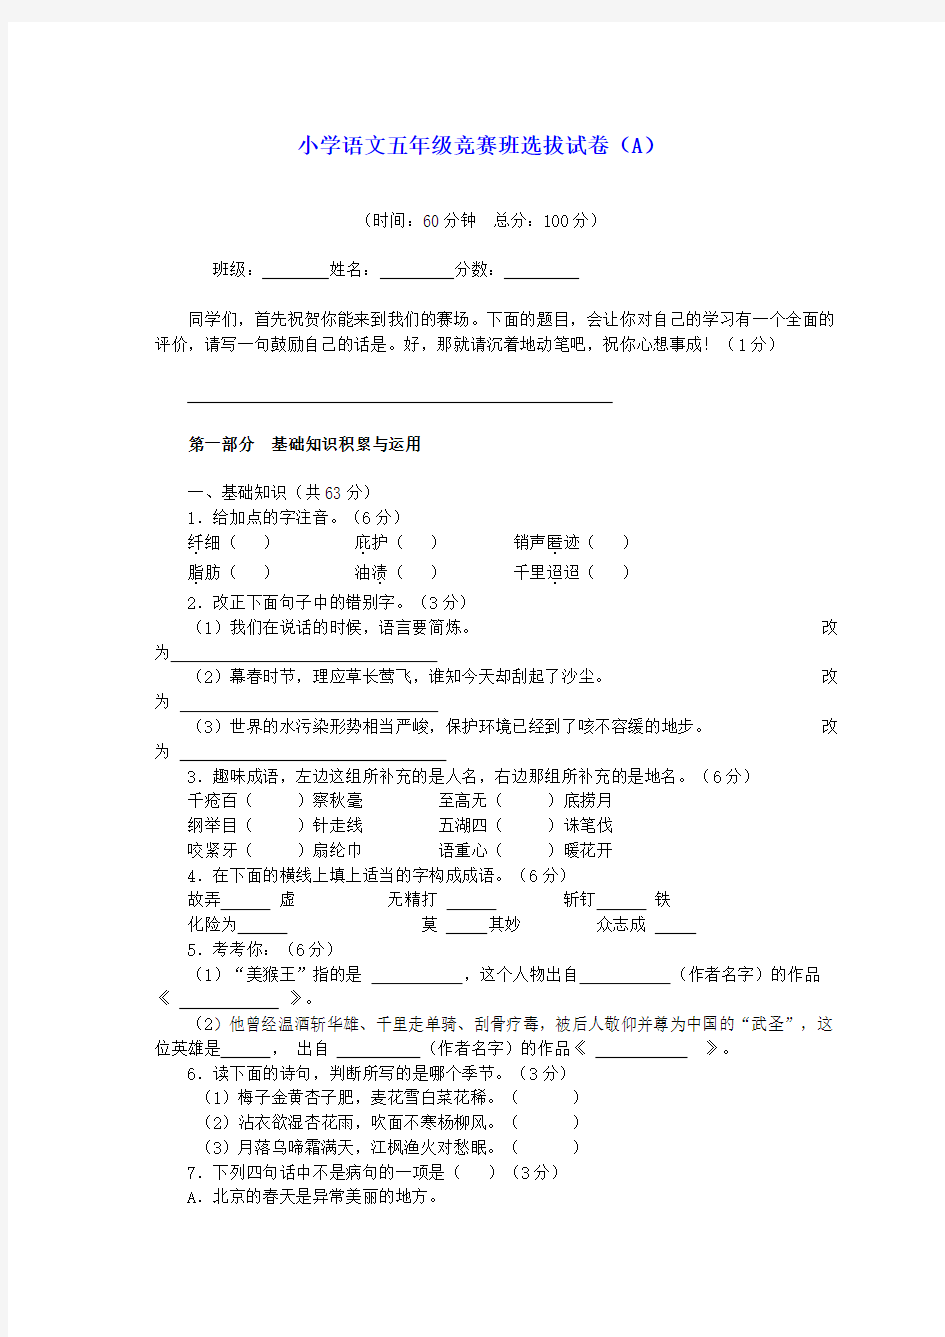 2009年春季五年级语文竞赛班选拔考试试卷(A)